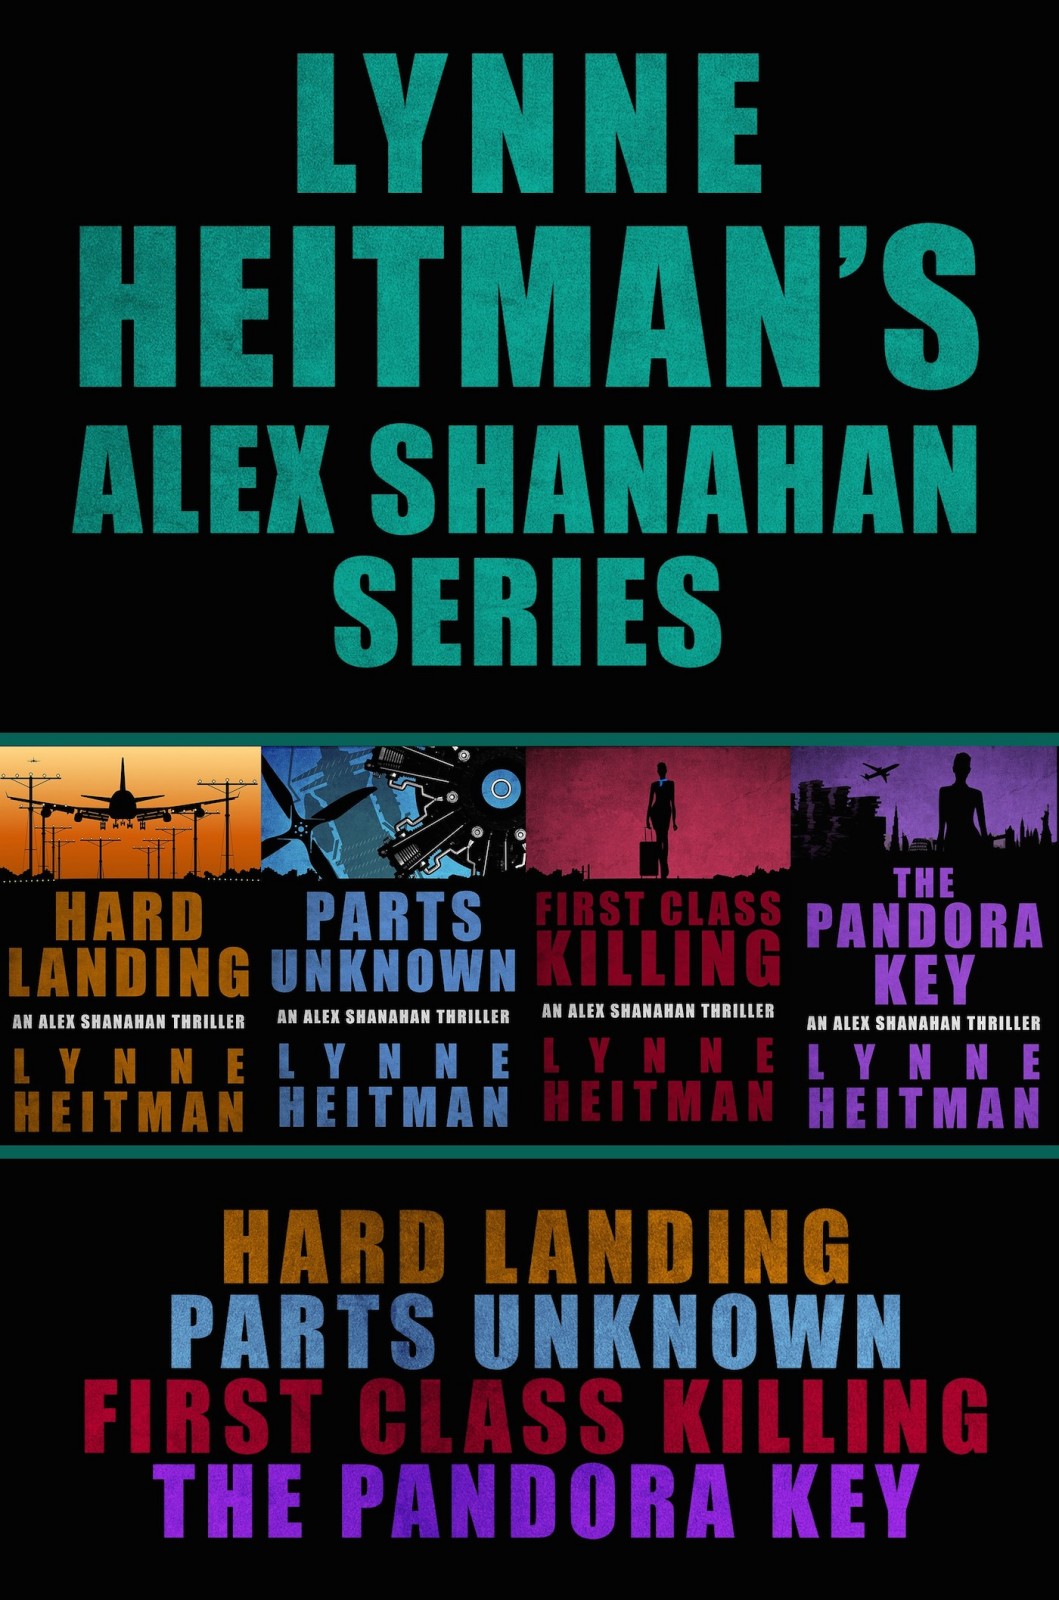 The Alex Shanahan Series